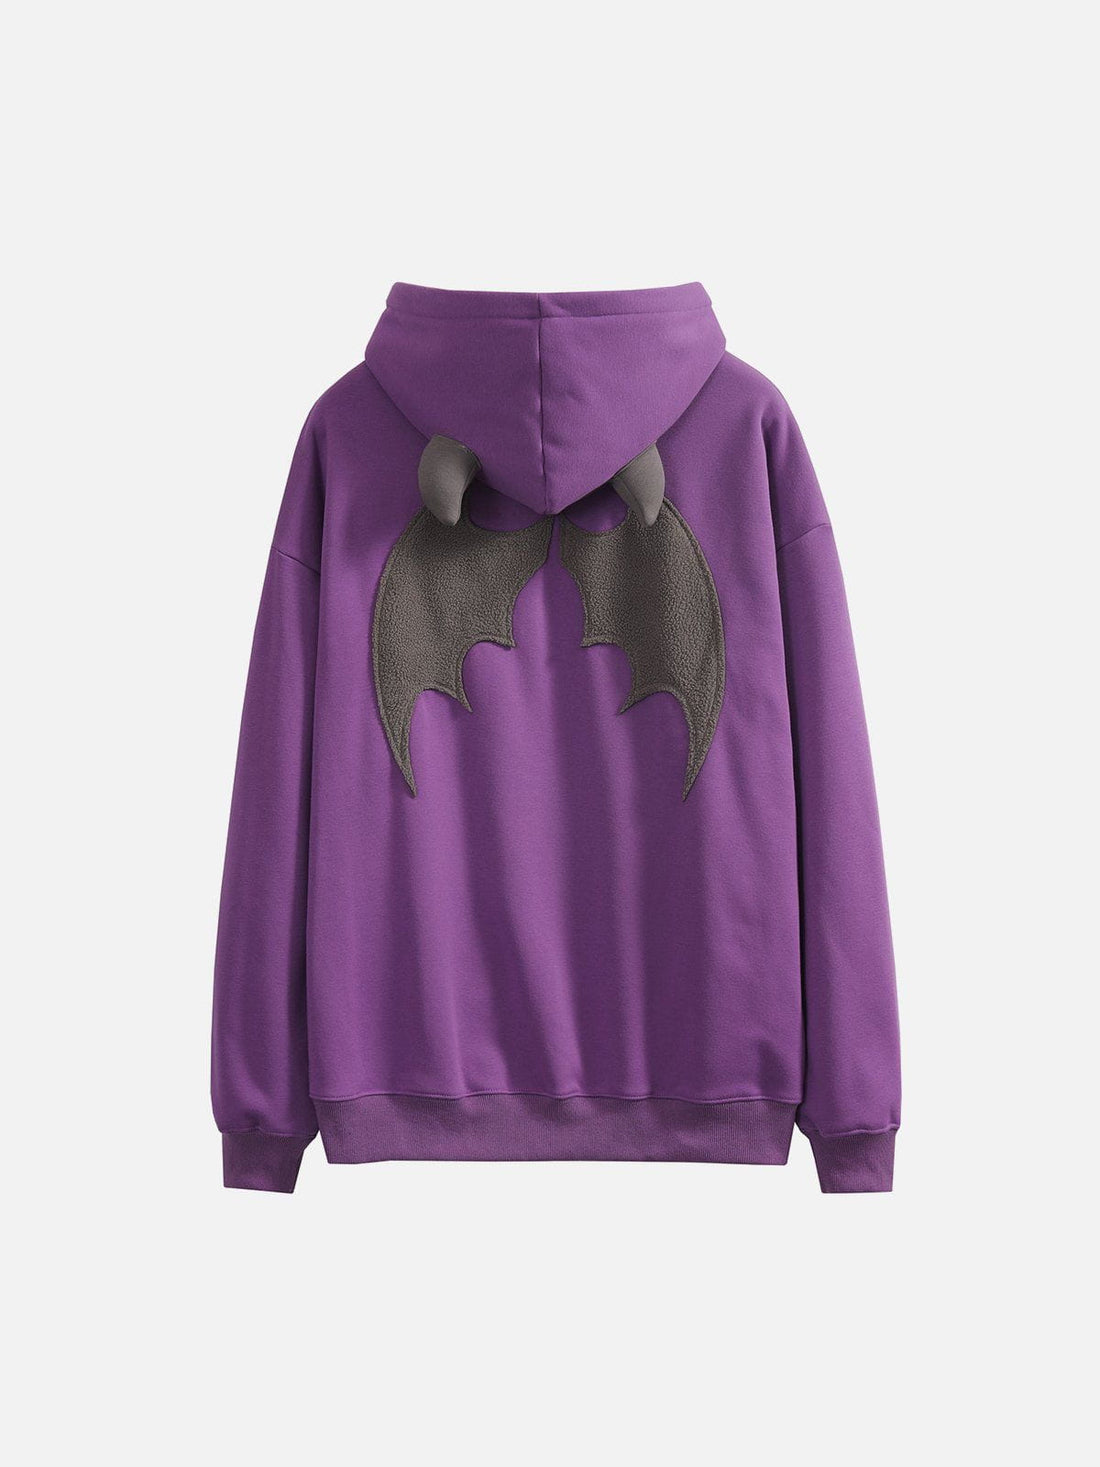 WINGS - Embroidered Zip Up Hoodie Purple | Teenwear.eu